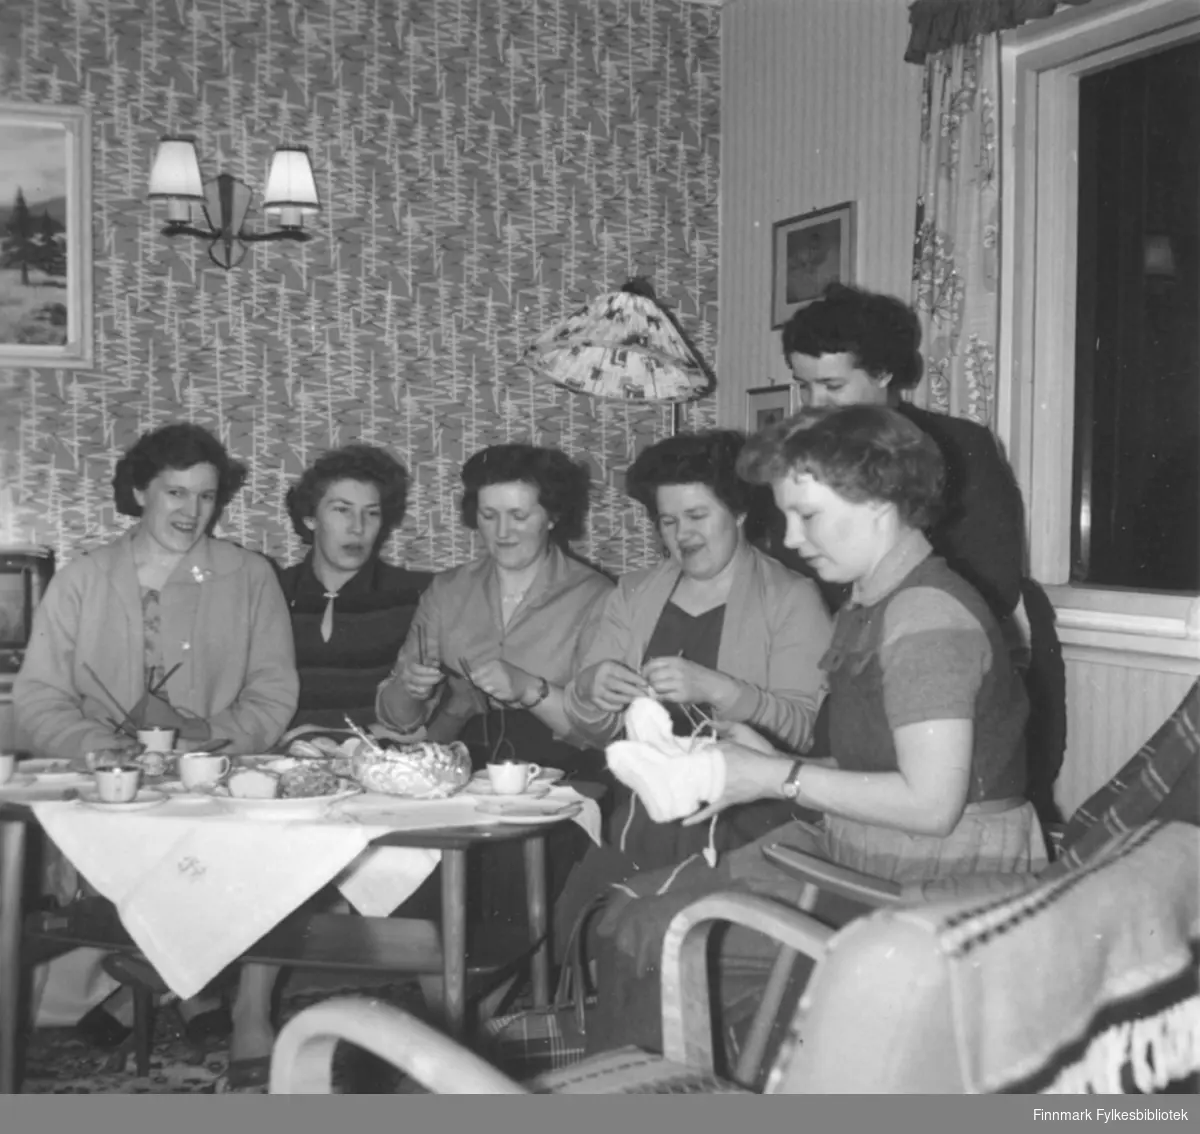 Syforening i Fosseveien 3, ca. 1960-1965. Det ser ut til at kvinnene for det meste hadde strikketøy med